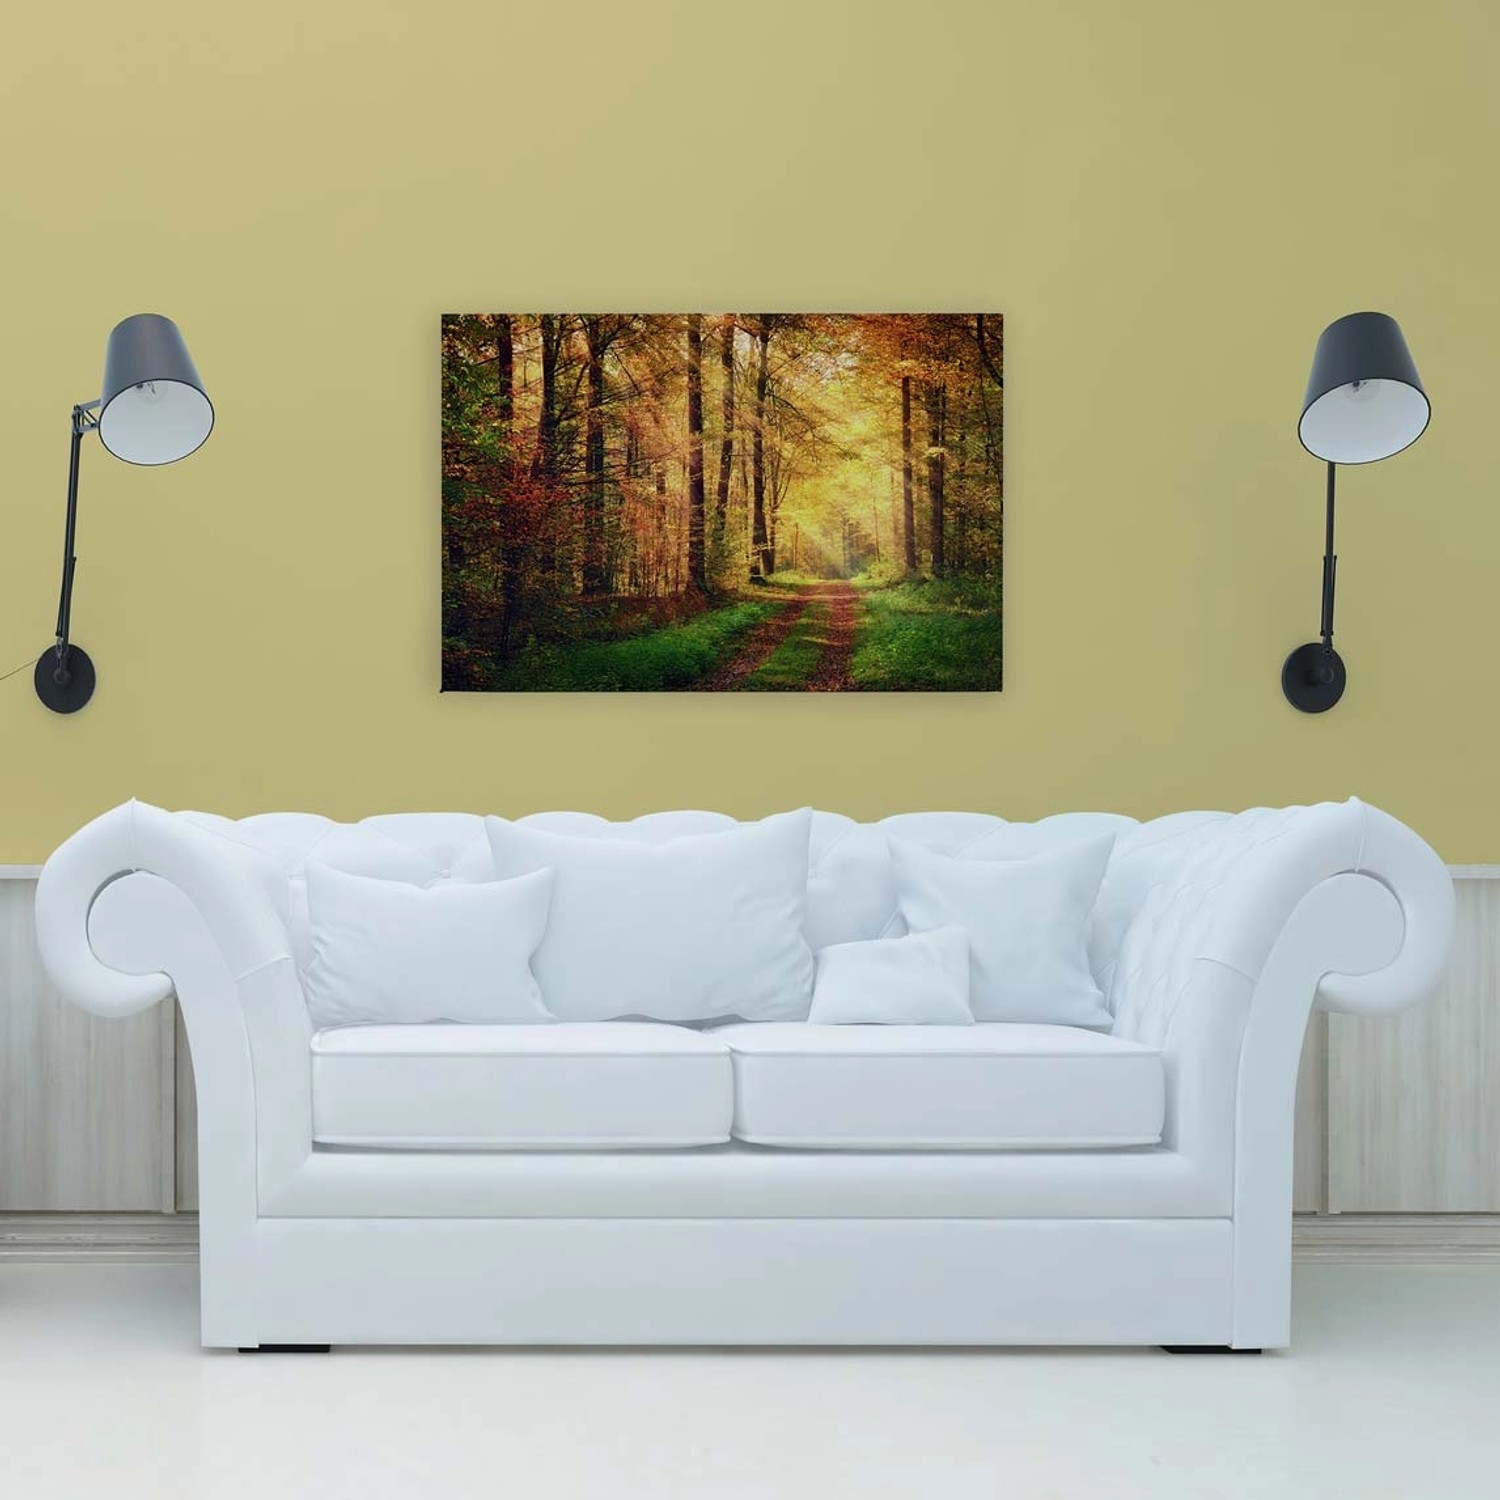 Bricoflor Wald Sonne Bild In 120 X 80 Cm Herbstwald Leinwand Romantisch Für Wohnzimmer Und Schlafzimmer Wandbild Mit Nat